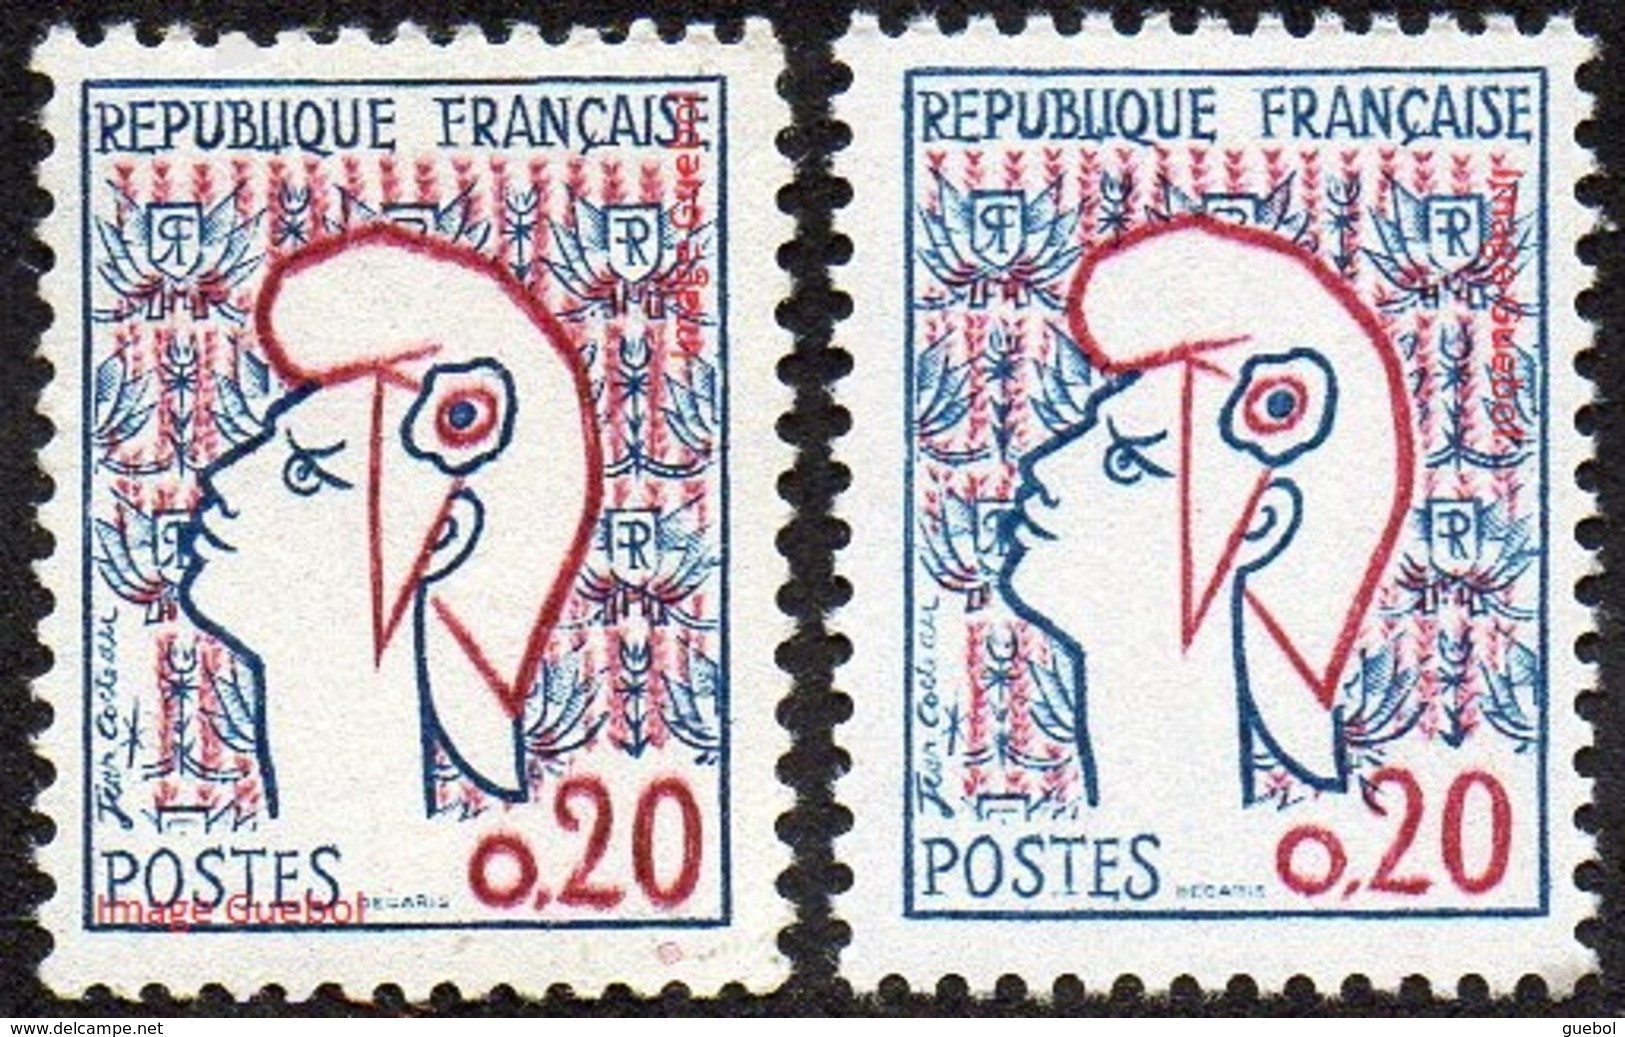 France Marianne De Cocteau N° 1282,** Et 1282_a ** Les 2 Types - 1961 Marianne (Cocteau)